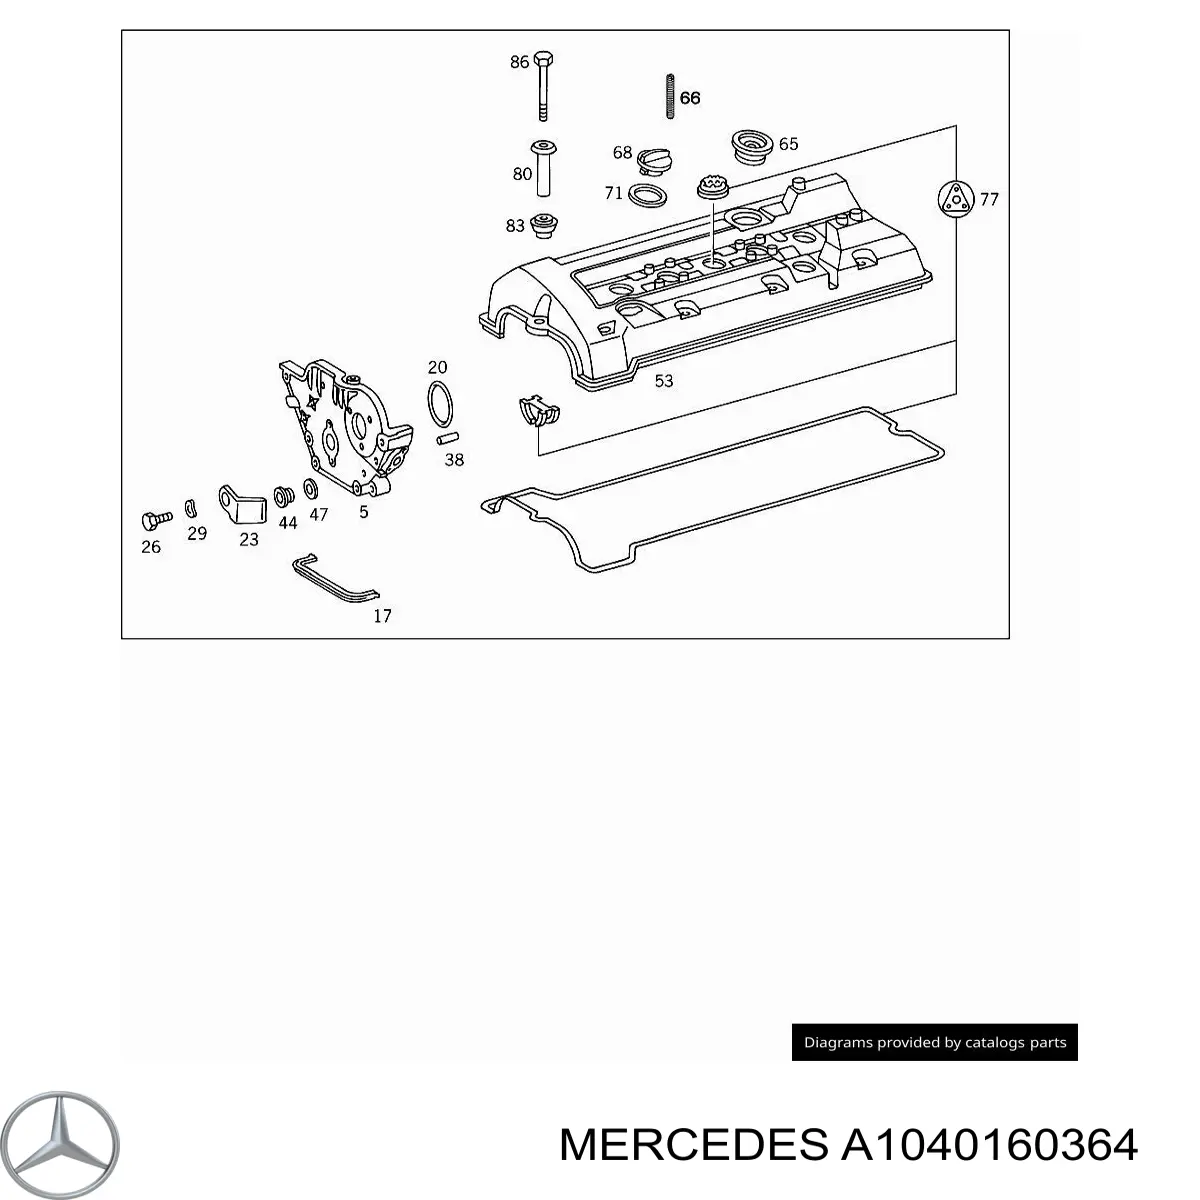 A1040160364 Mercedes bucha de fixação da tampa de válvulas